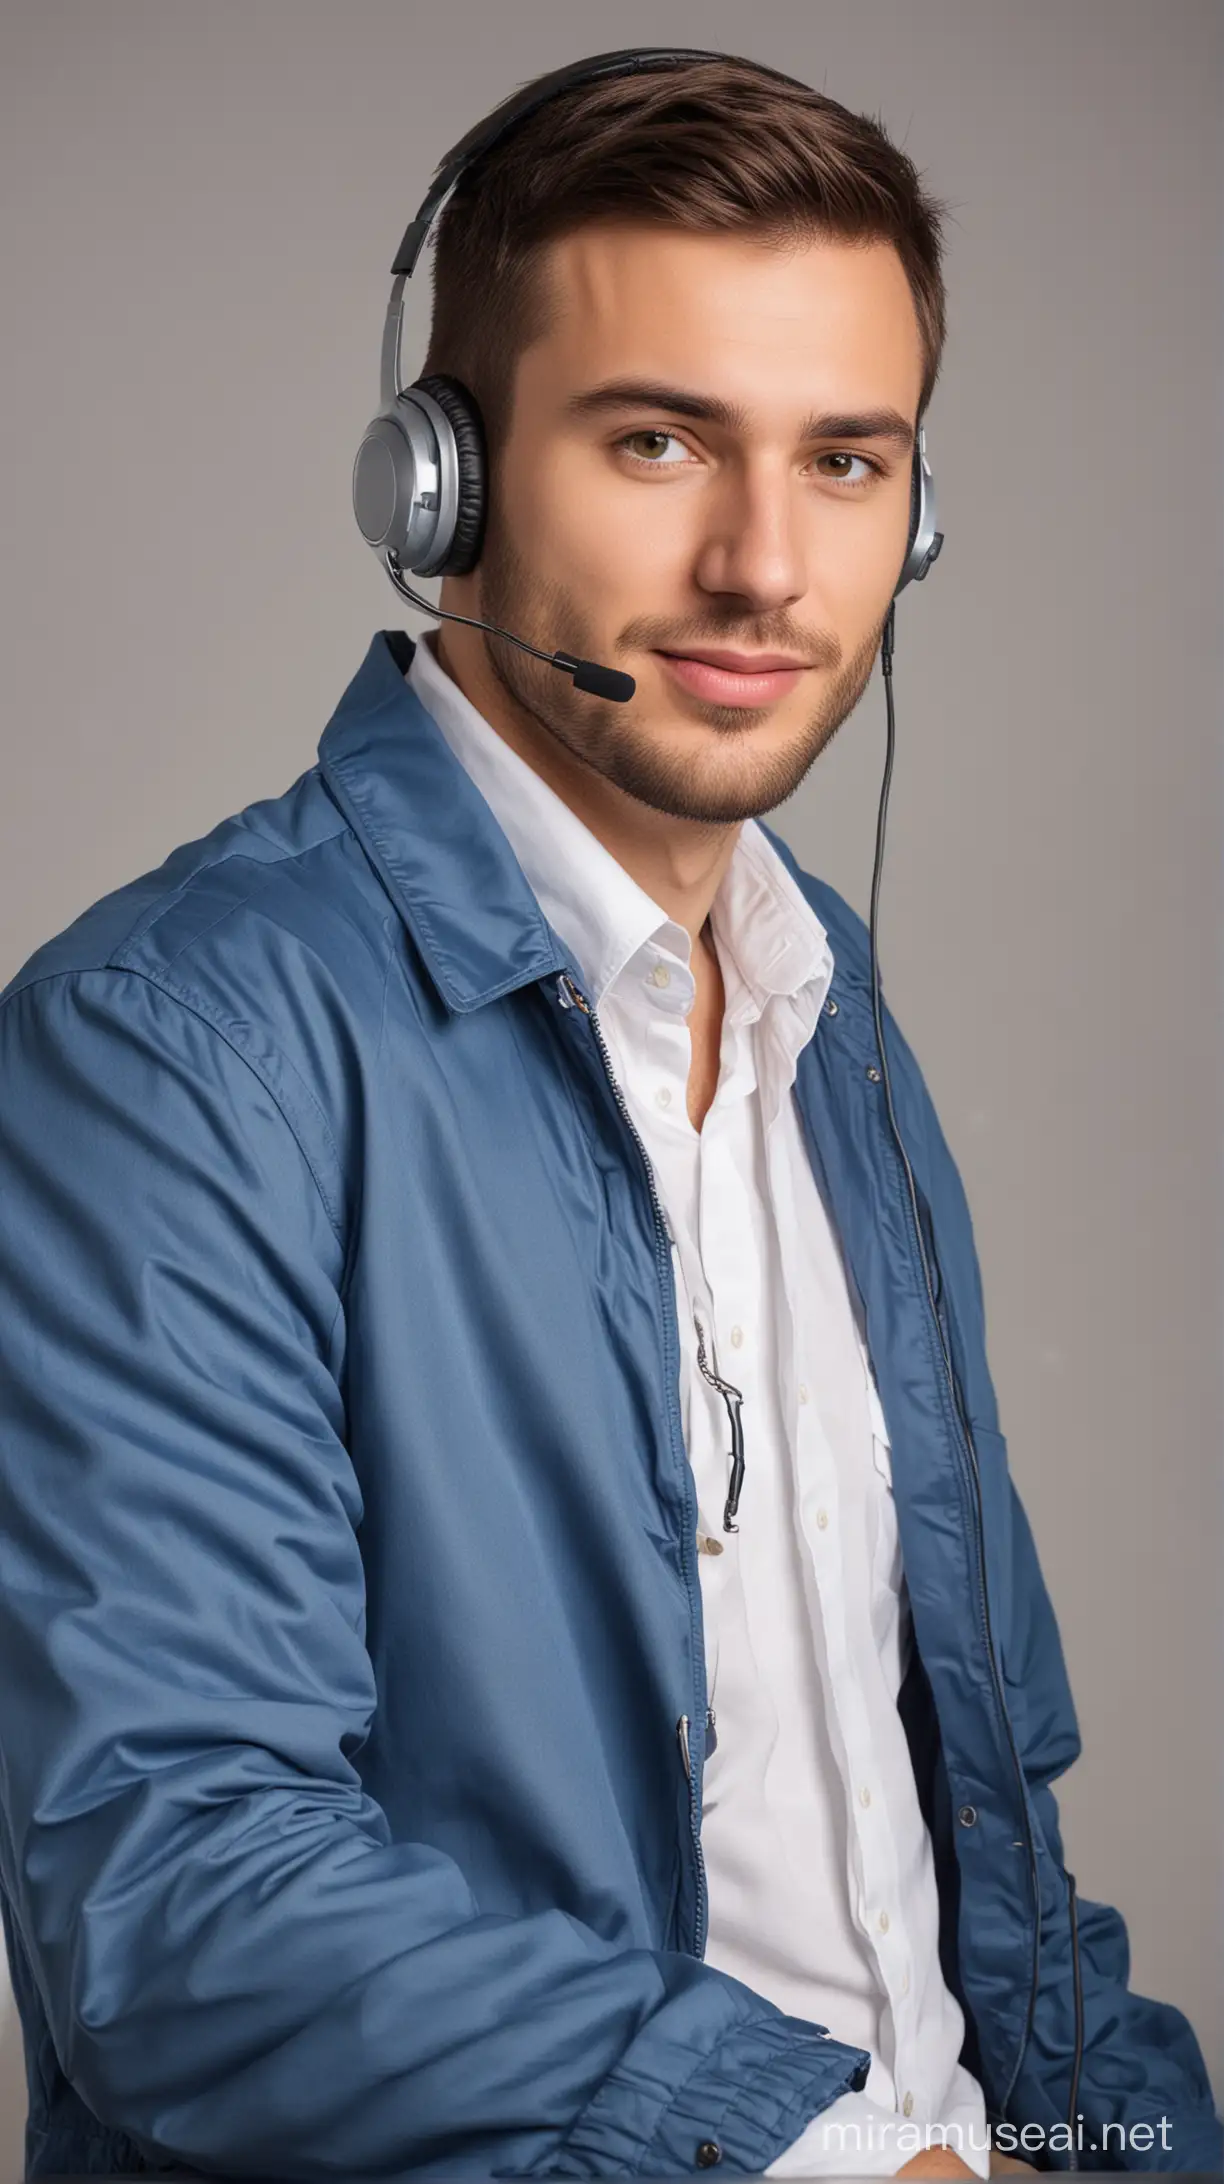 Operario de Call Center, con auriculares y un micrófono. Está vestido con un saco azul, camisa blanca. Está sentado.